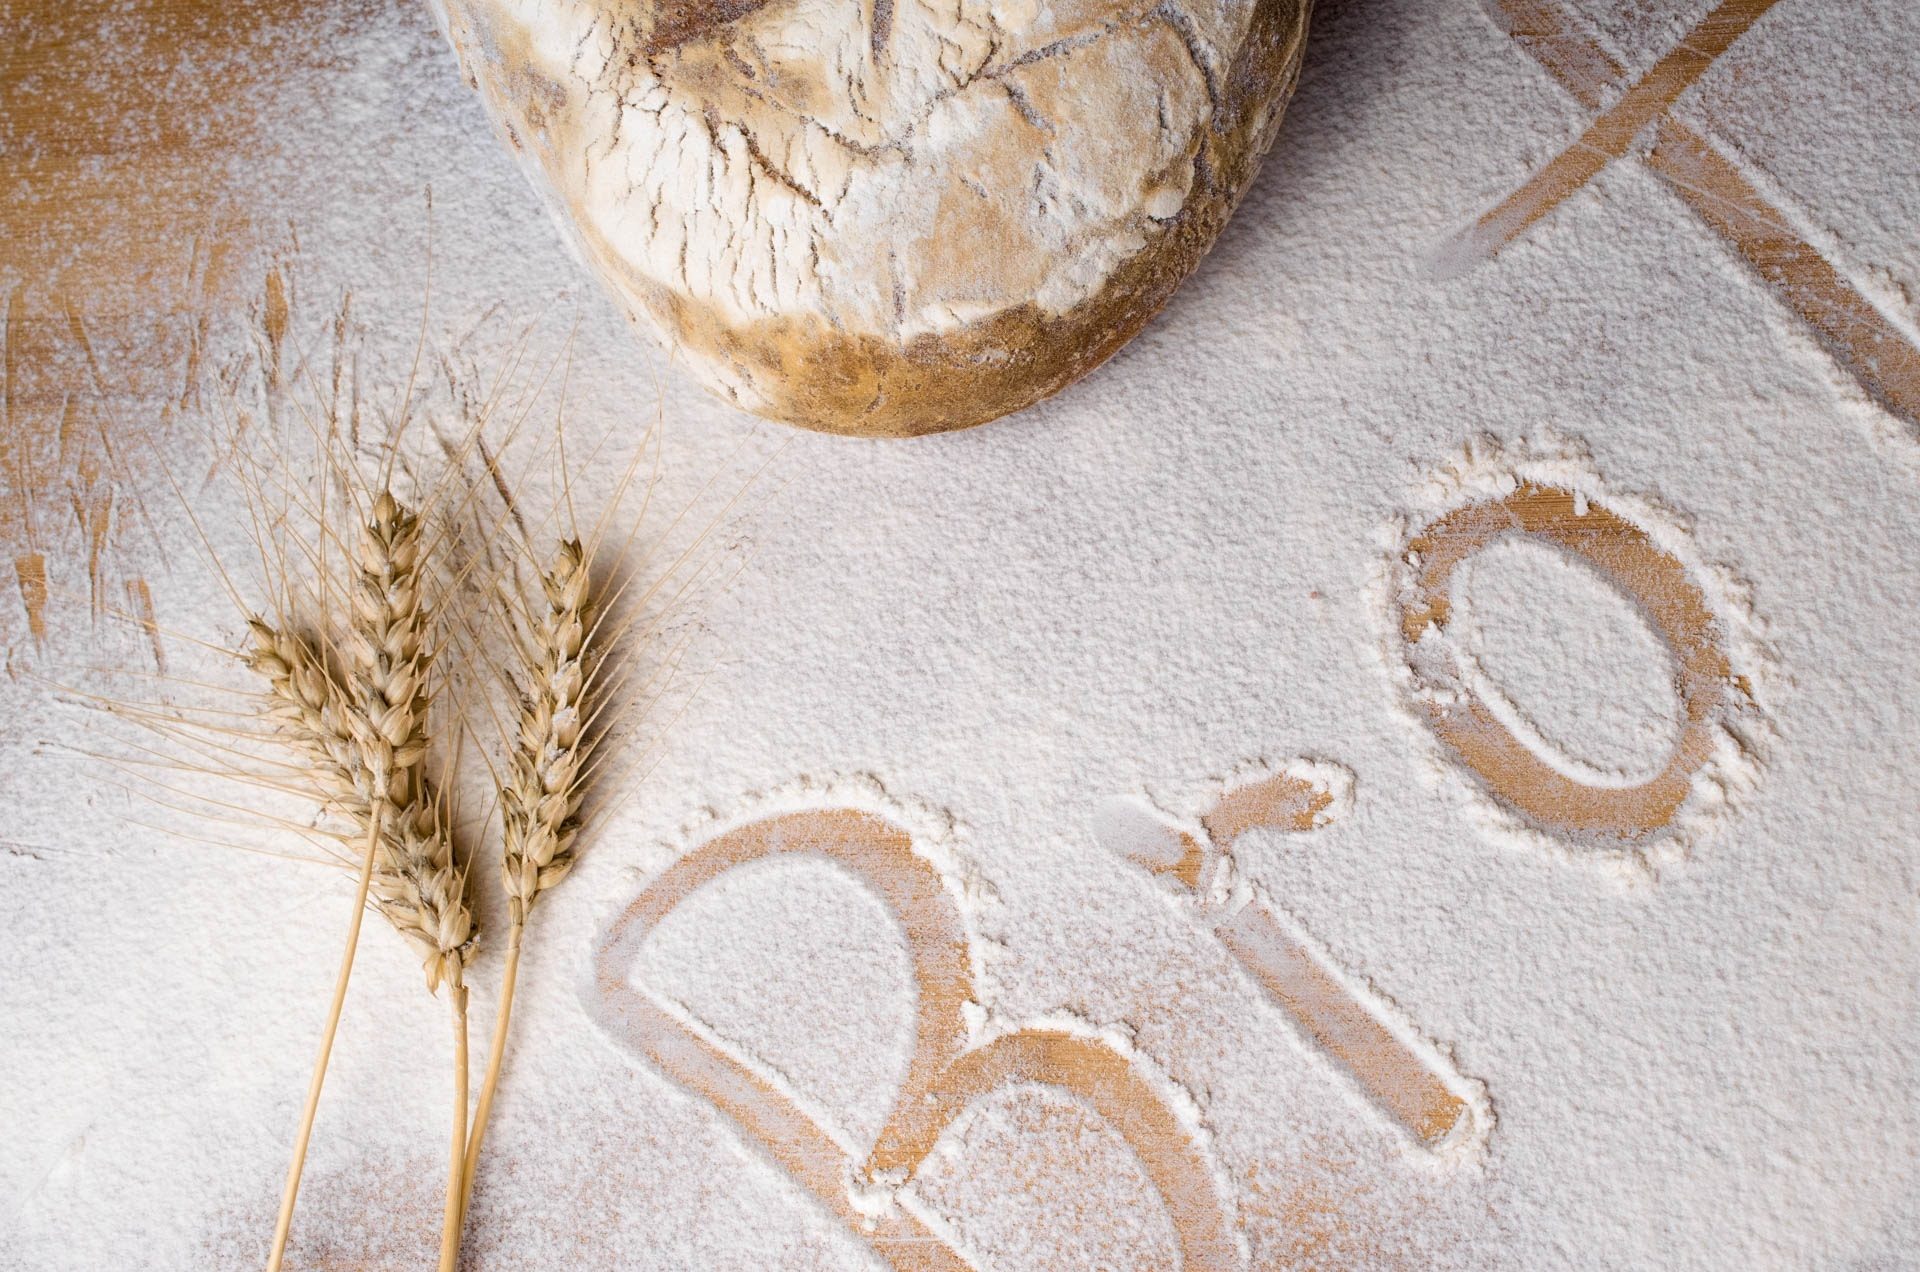 Ist Brot gesund?